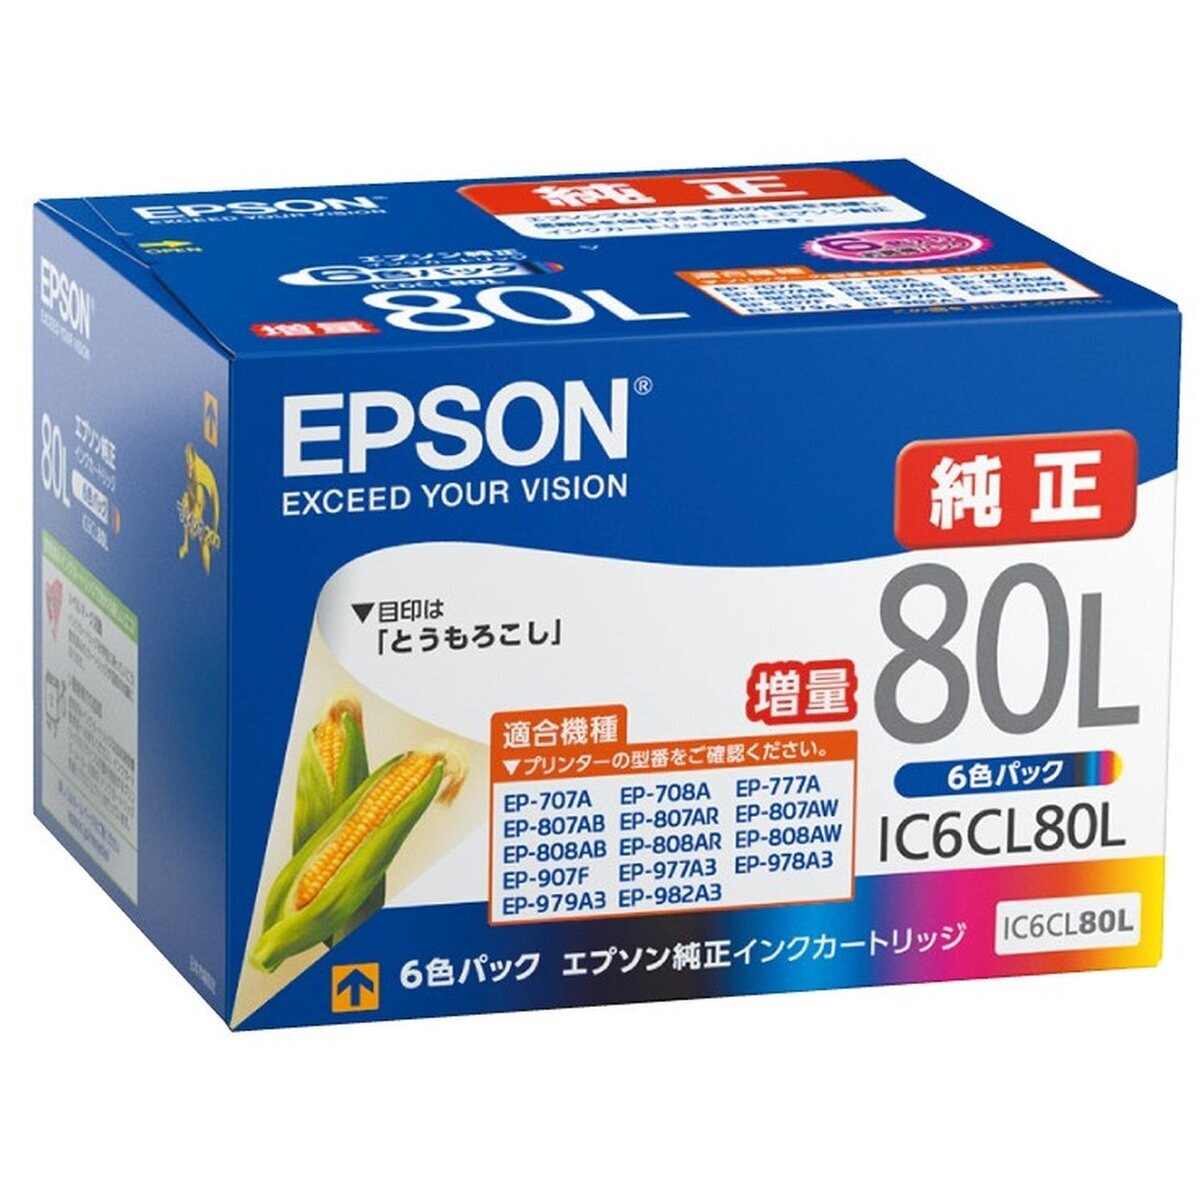 64%OFF!】 EPSON インクカートリッジ IC6CL80L 増量 sushitai.com.mx